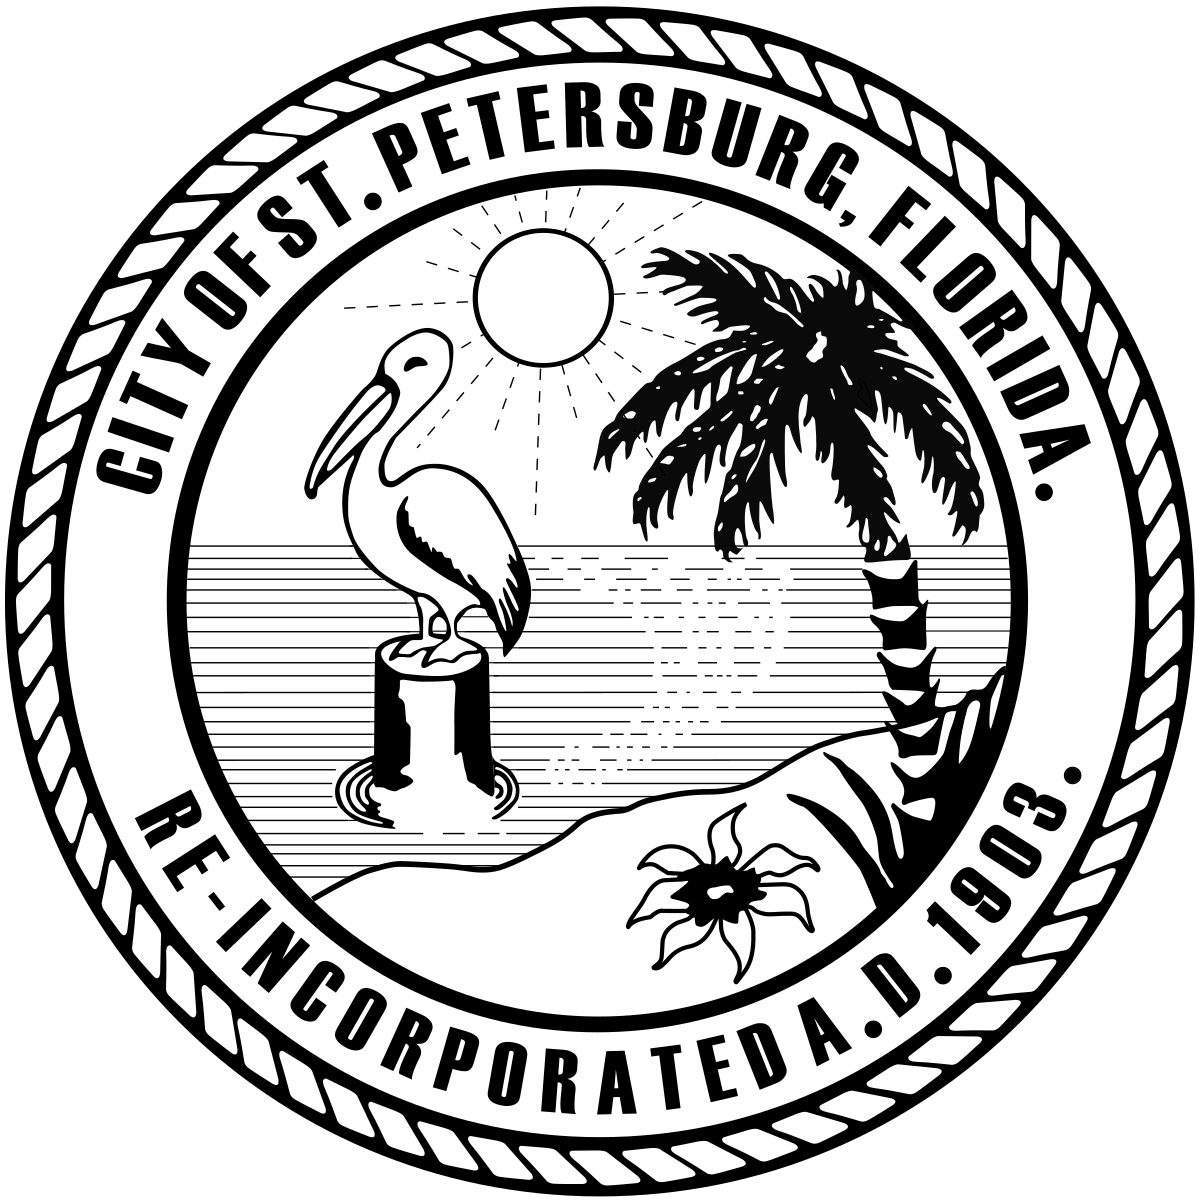 St. Petersburg (FL) seal